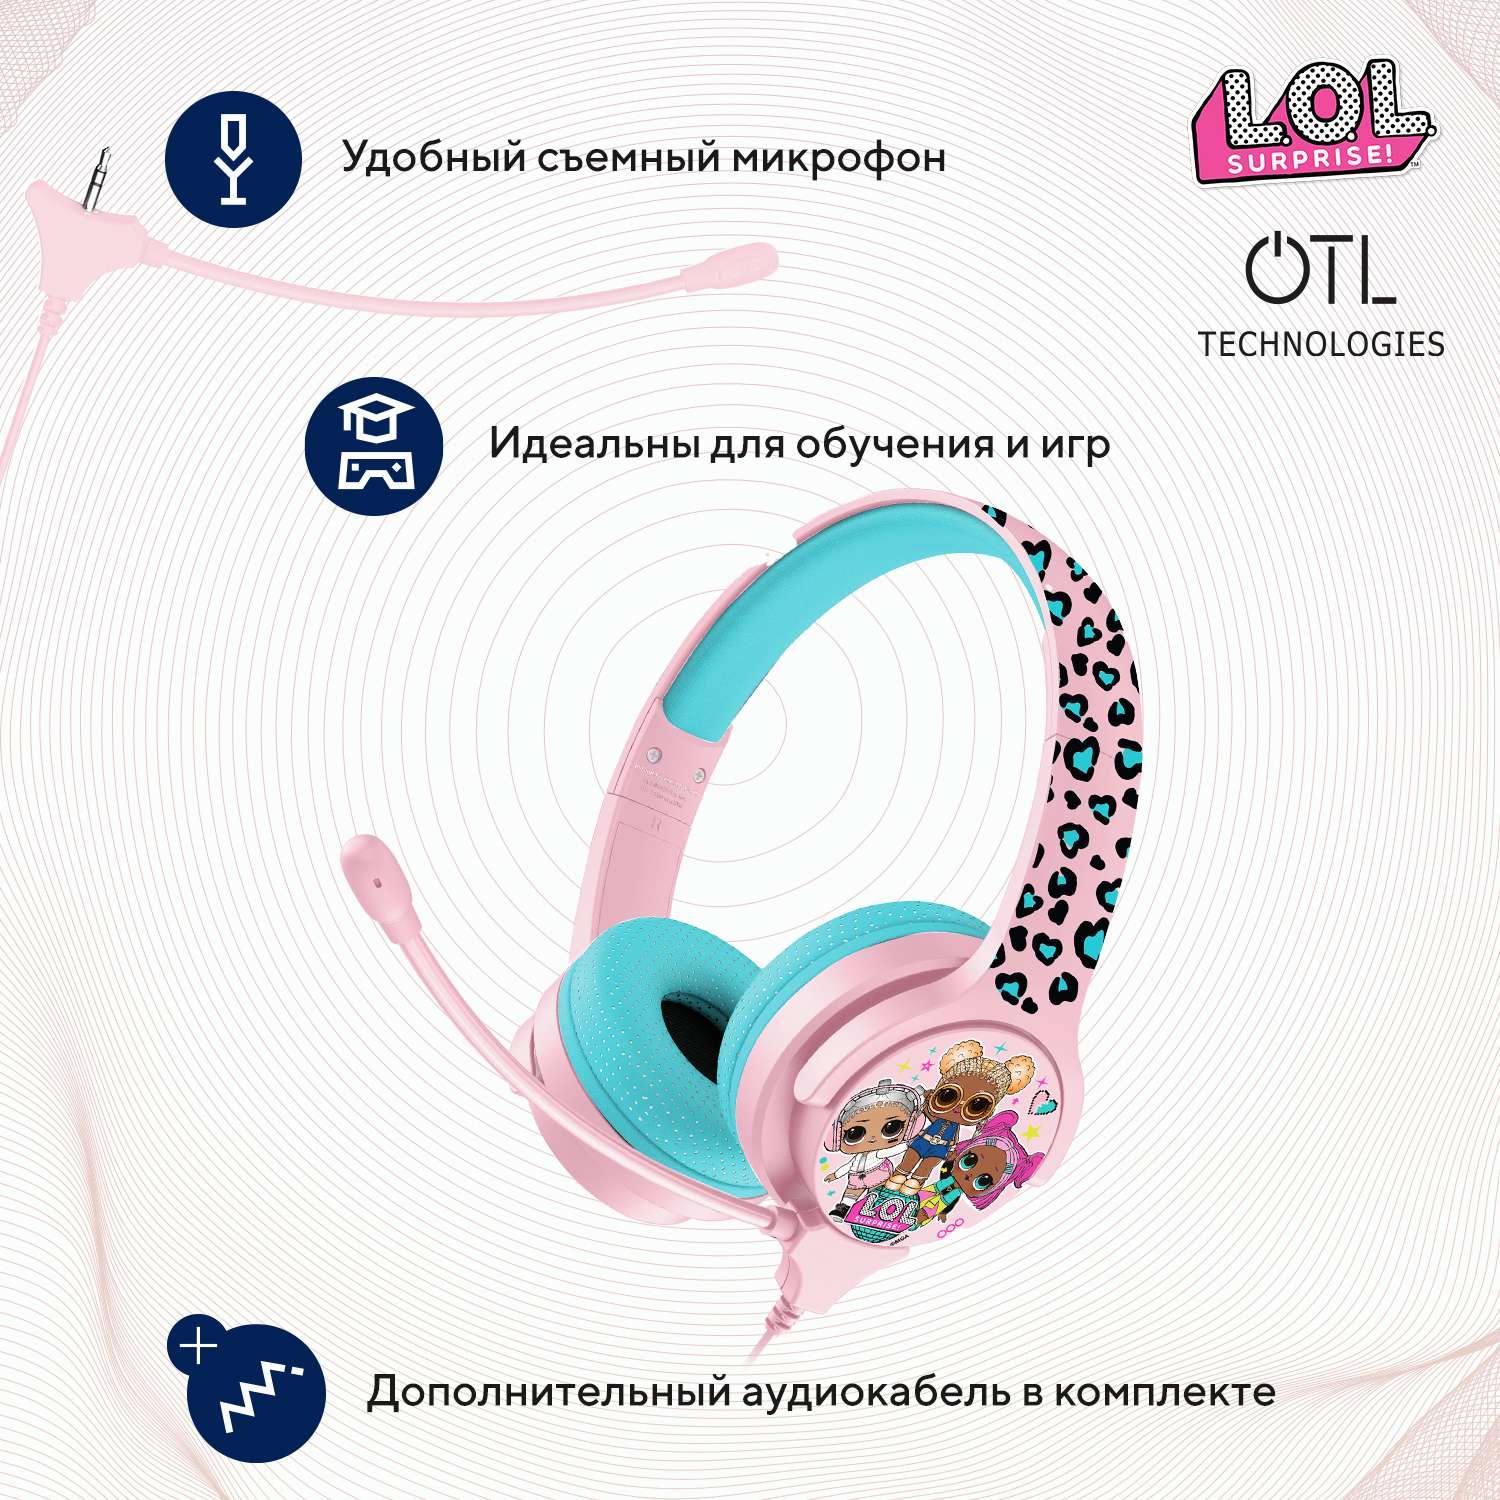 Наушники проводные OTL Technologies с микрофоном детские L.O.L. Surprise - фото 2